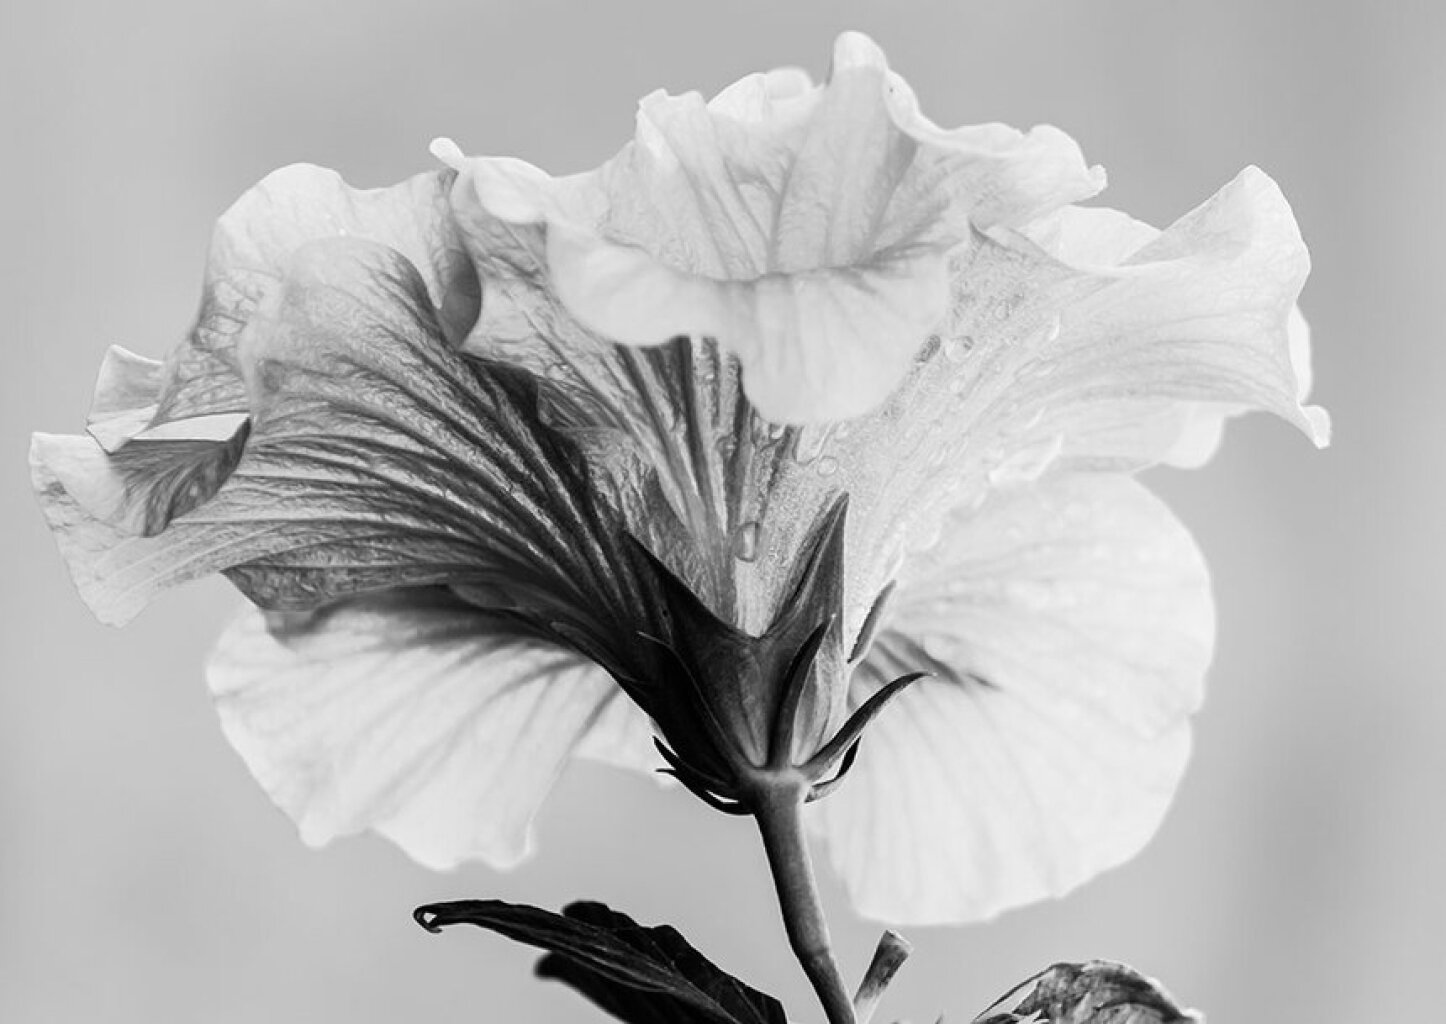 Quadro Flor de Hibisco Orvalhada por Edmoraes -  CATEGORIAS